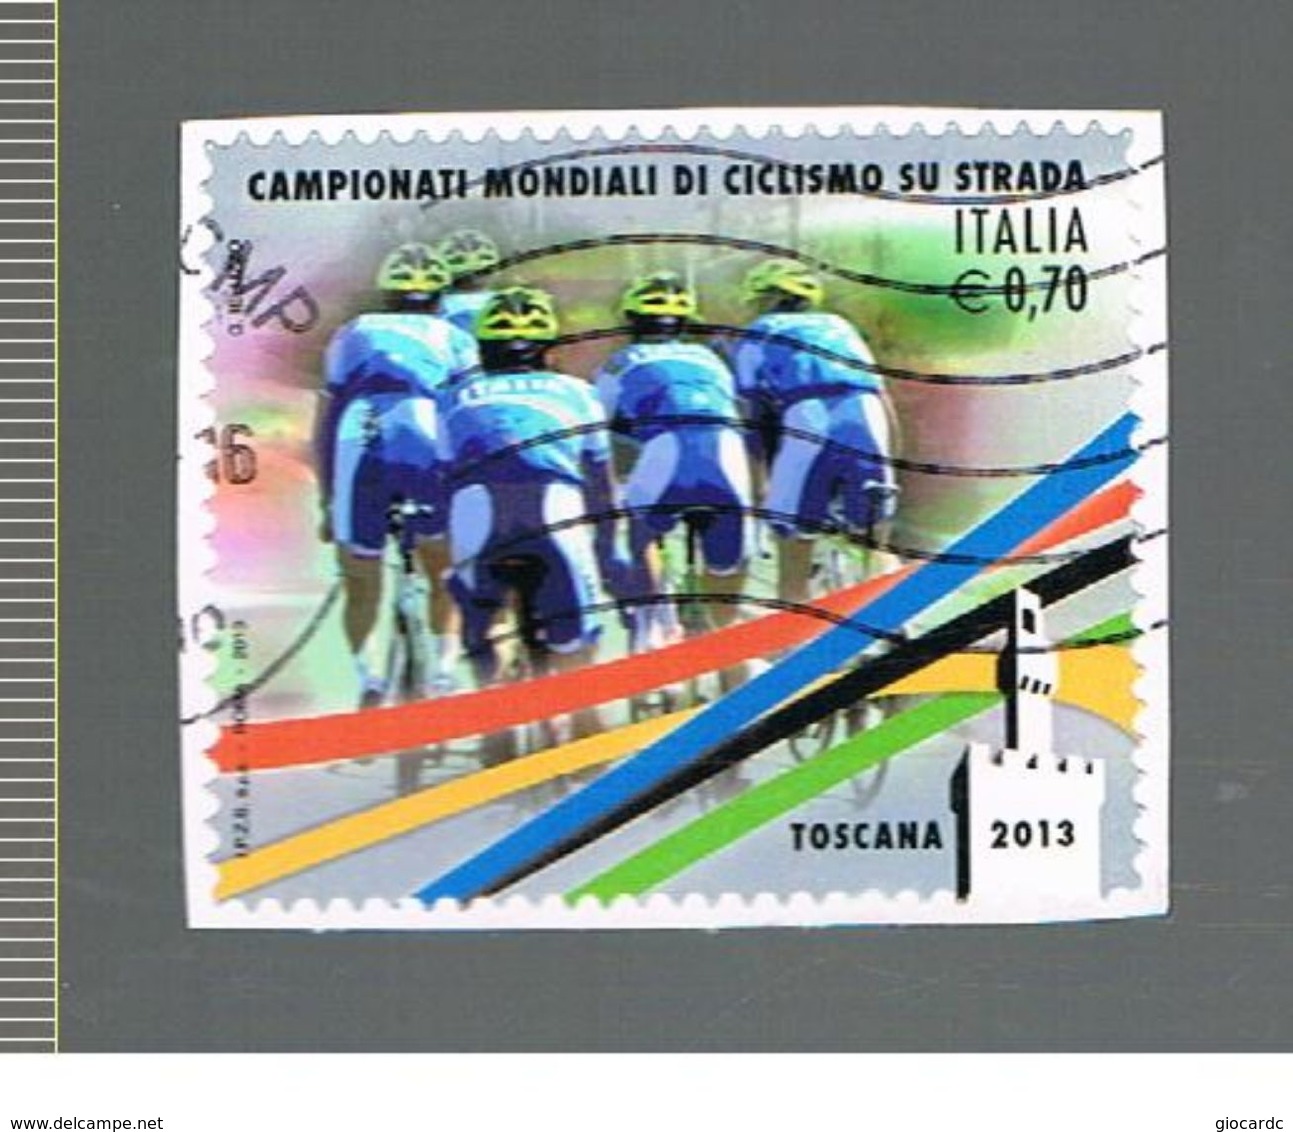 ITALIA REPUBBLICA  -   2013  MONDIALI CICLISMO    - USATO -     RIF.  30406 - 2011-20: Usati